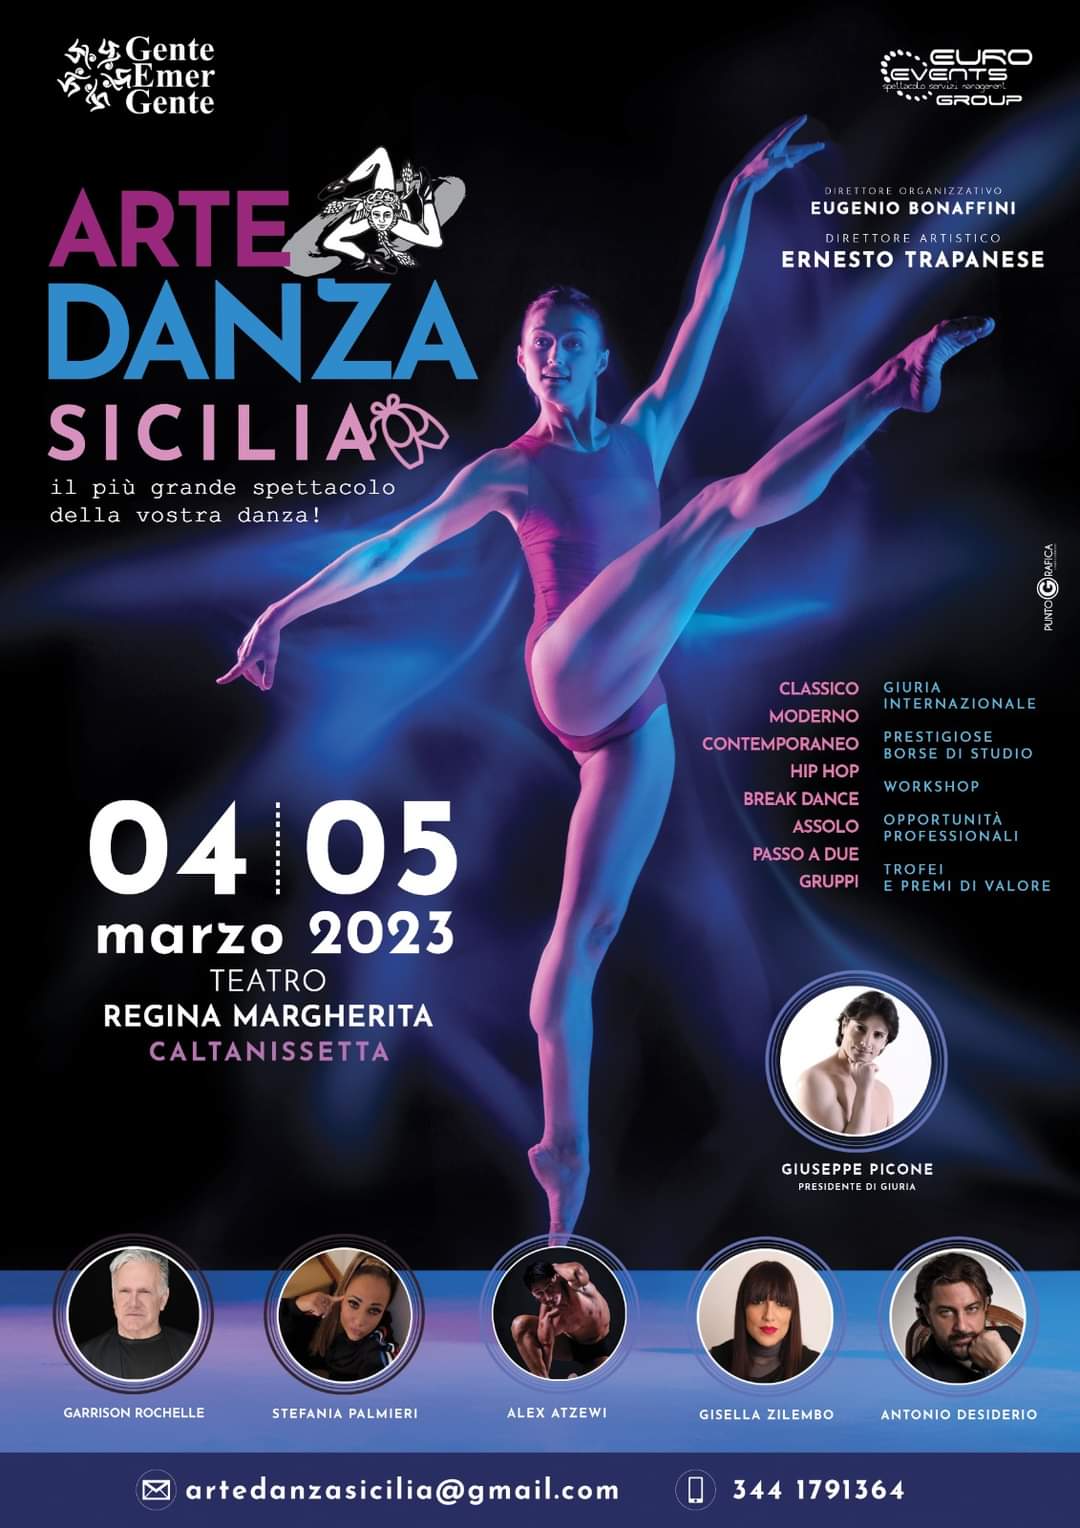 ARTE DANZA SICILIA, Teatro Regina Margherita, Caltanissetta